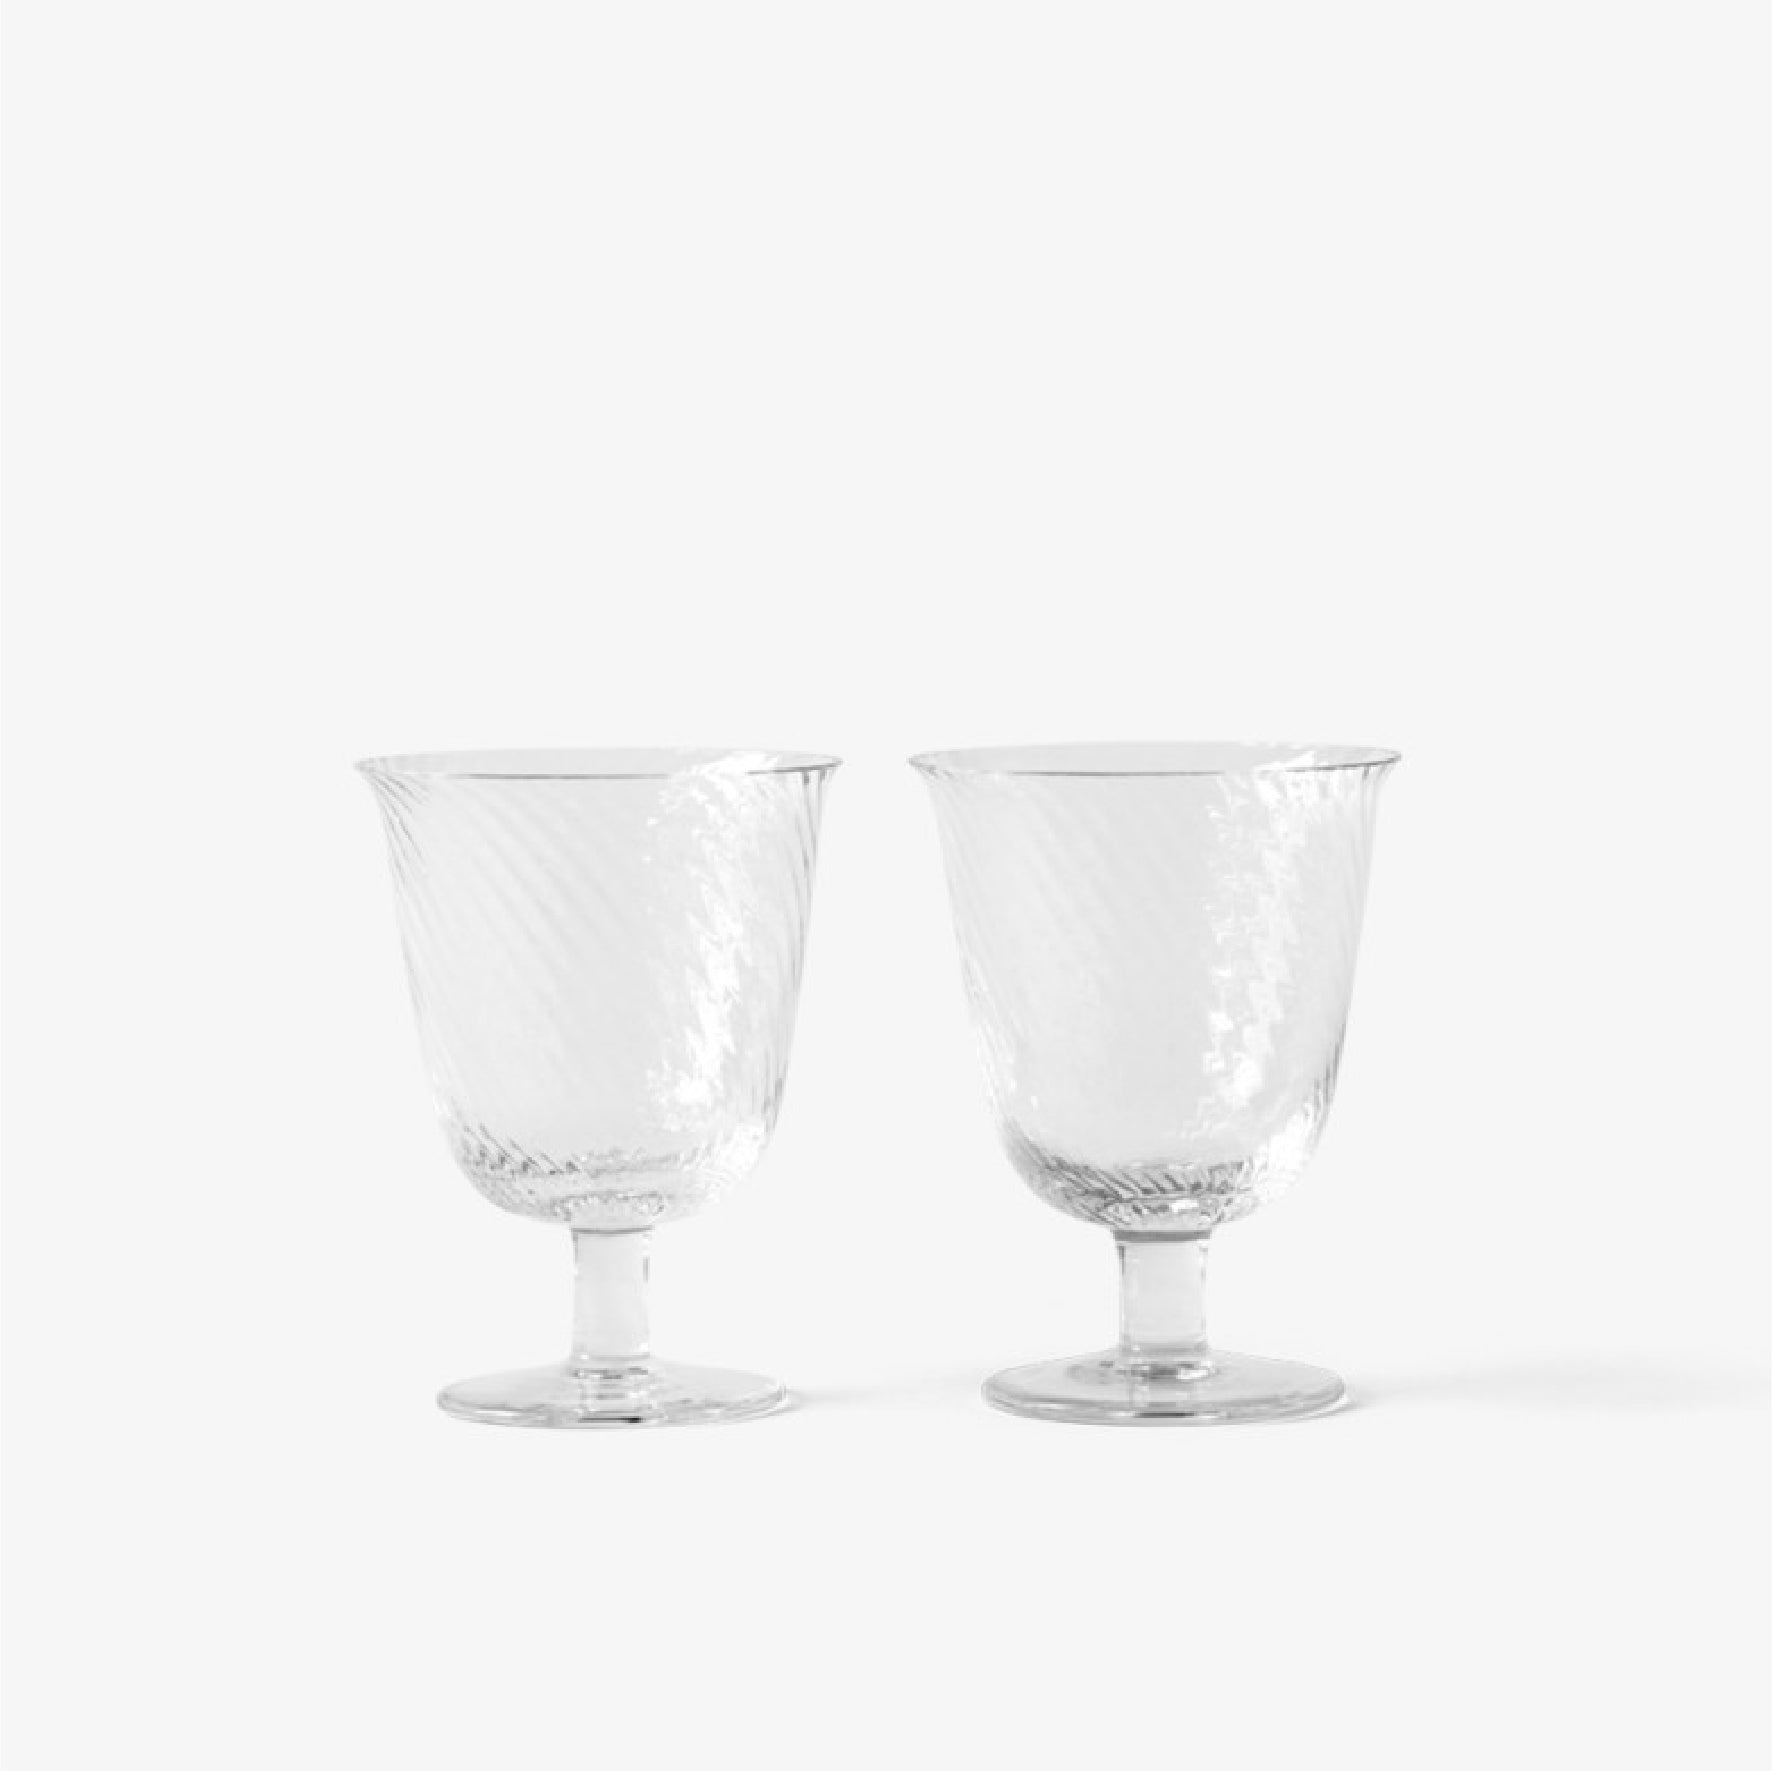 Collect Wine Glass SC79 手工玻璃高腳杯 2個套裝